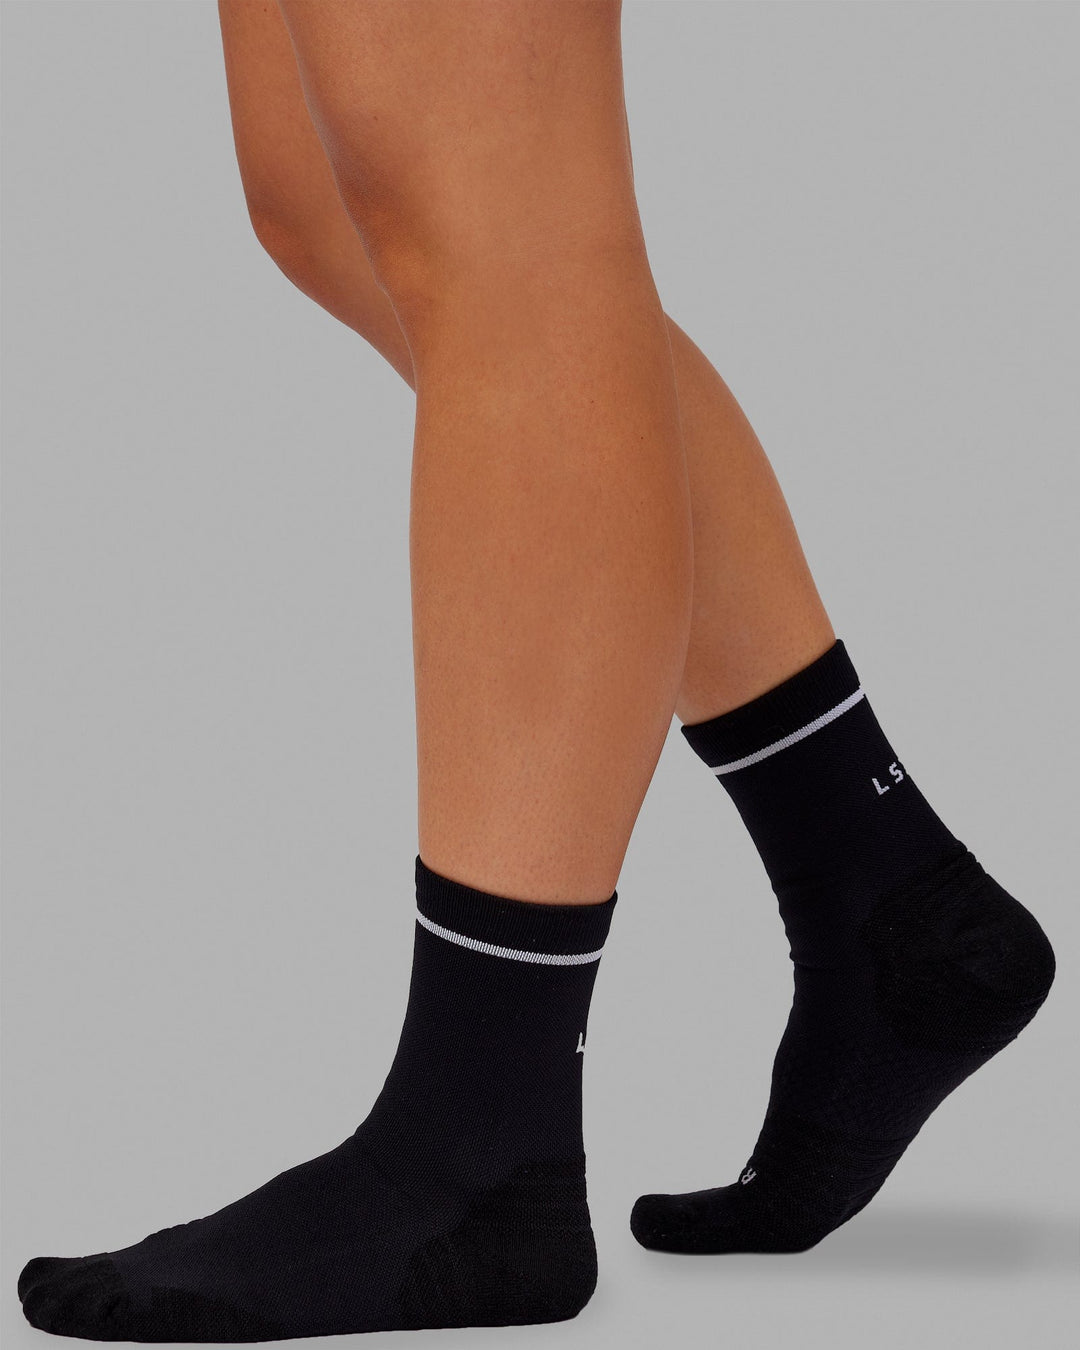 Fast Performance Quarter Socks - Black-White